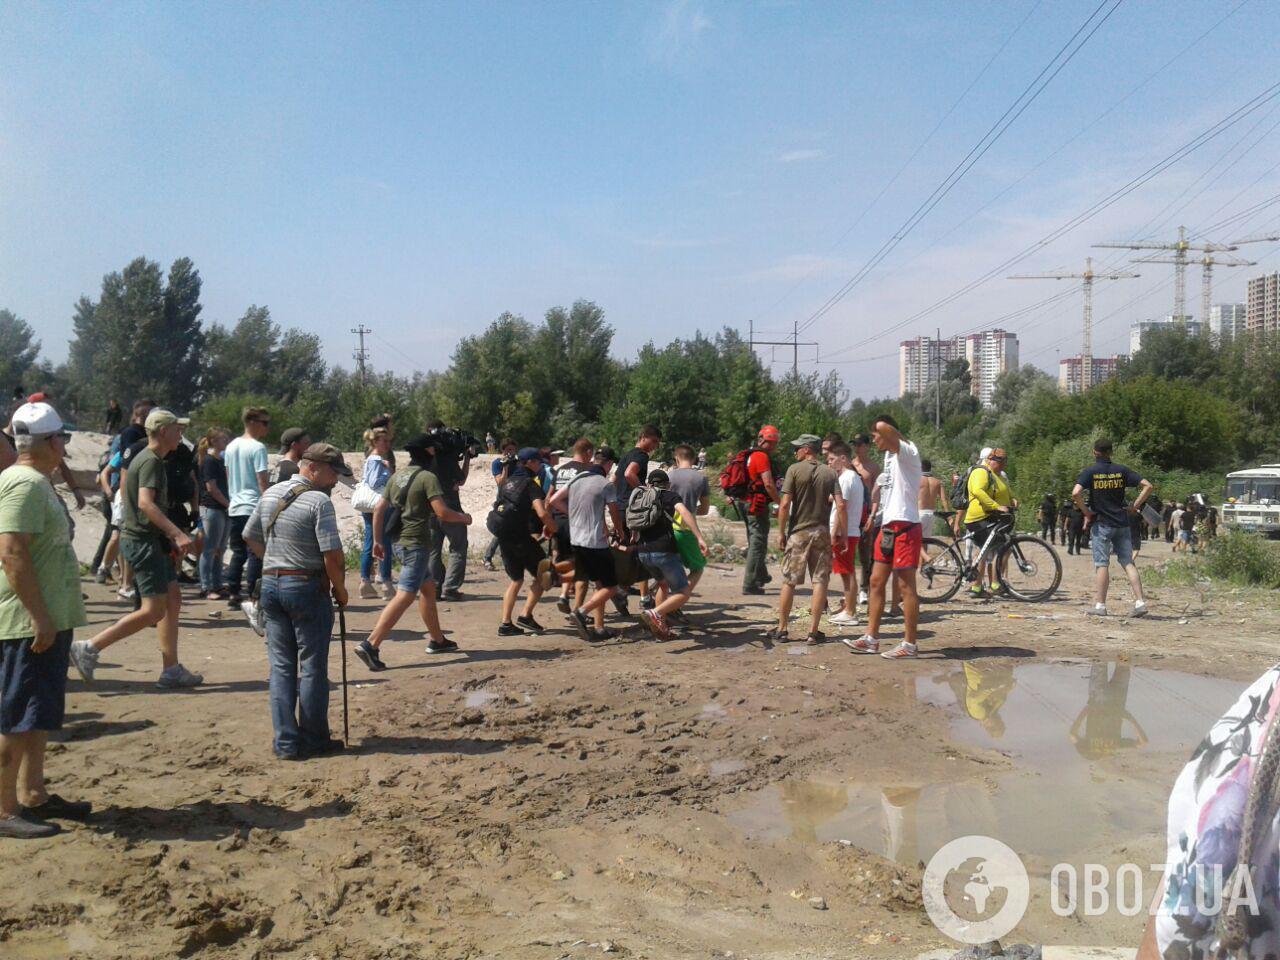 Звучали взрывы: в Киеве "Нацкорпус" устроил драку с полицией